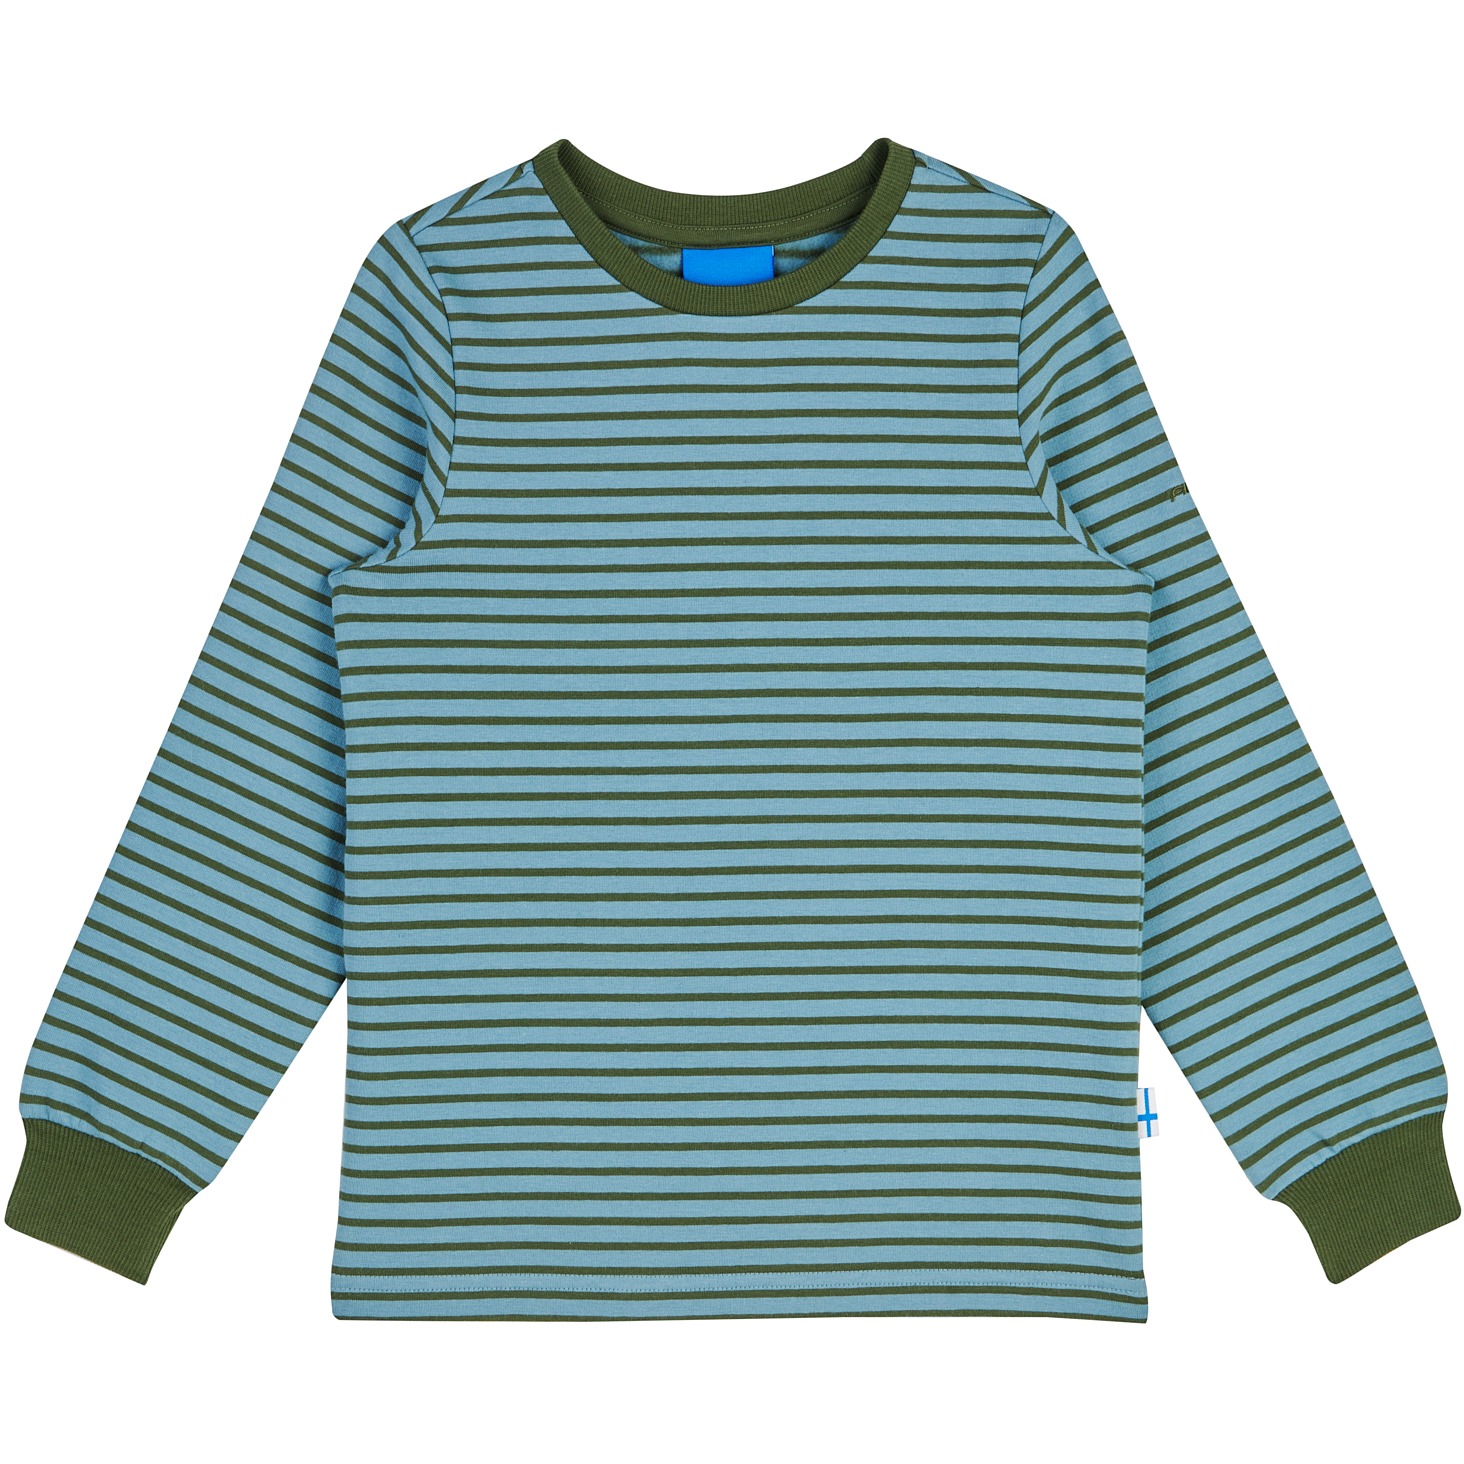 Productfoto van Finkid RIVI Kinder Sweatshirt met Lange Mouwen - smoke blue/bronze green